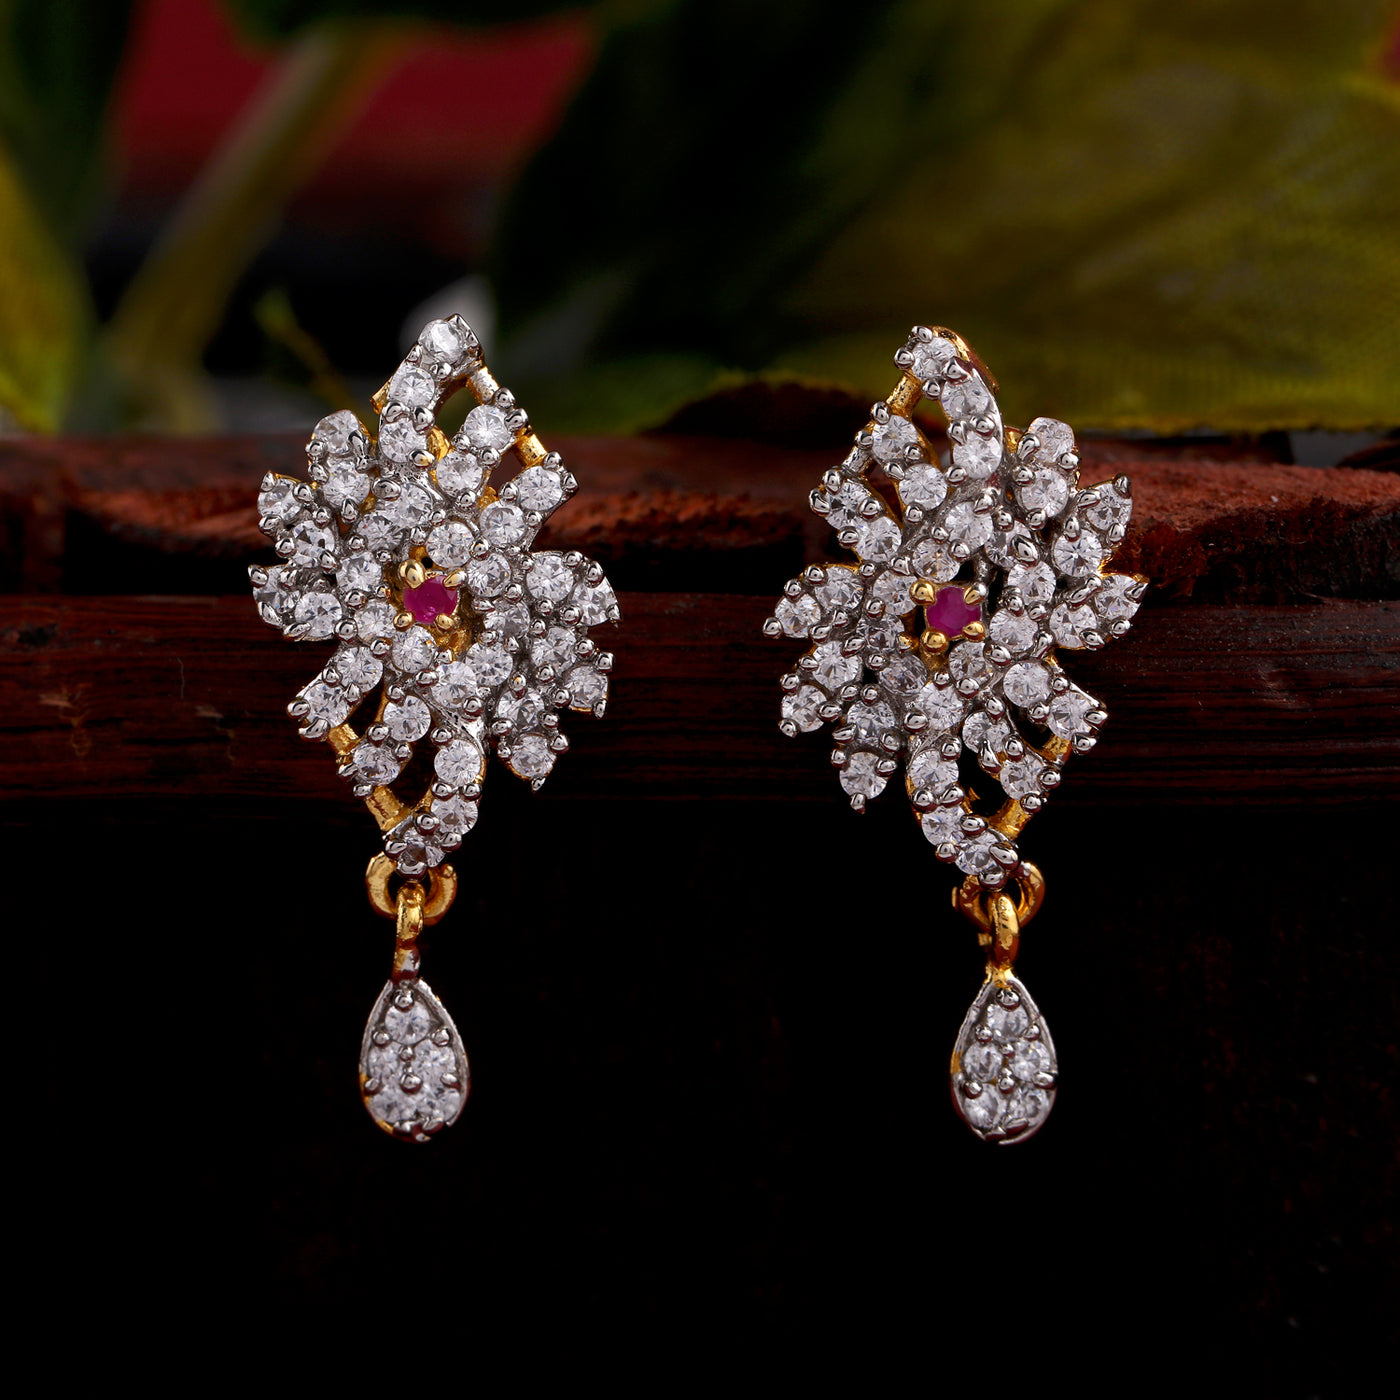 22K Gold 4 in 1 Uncut Diamond Earrings with Ruby & Emerald - 235-DER437 in  13.400 Grams